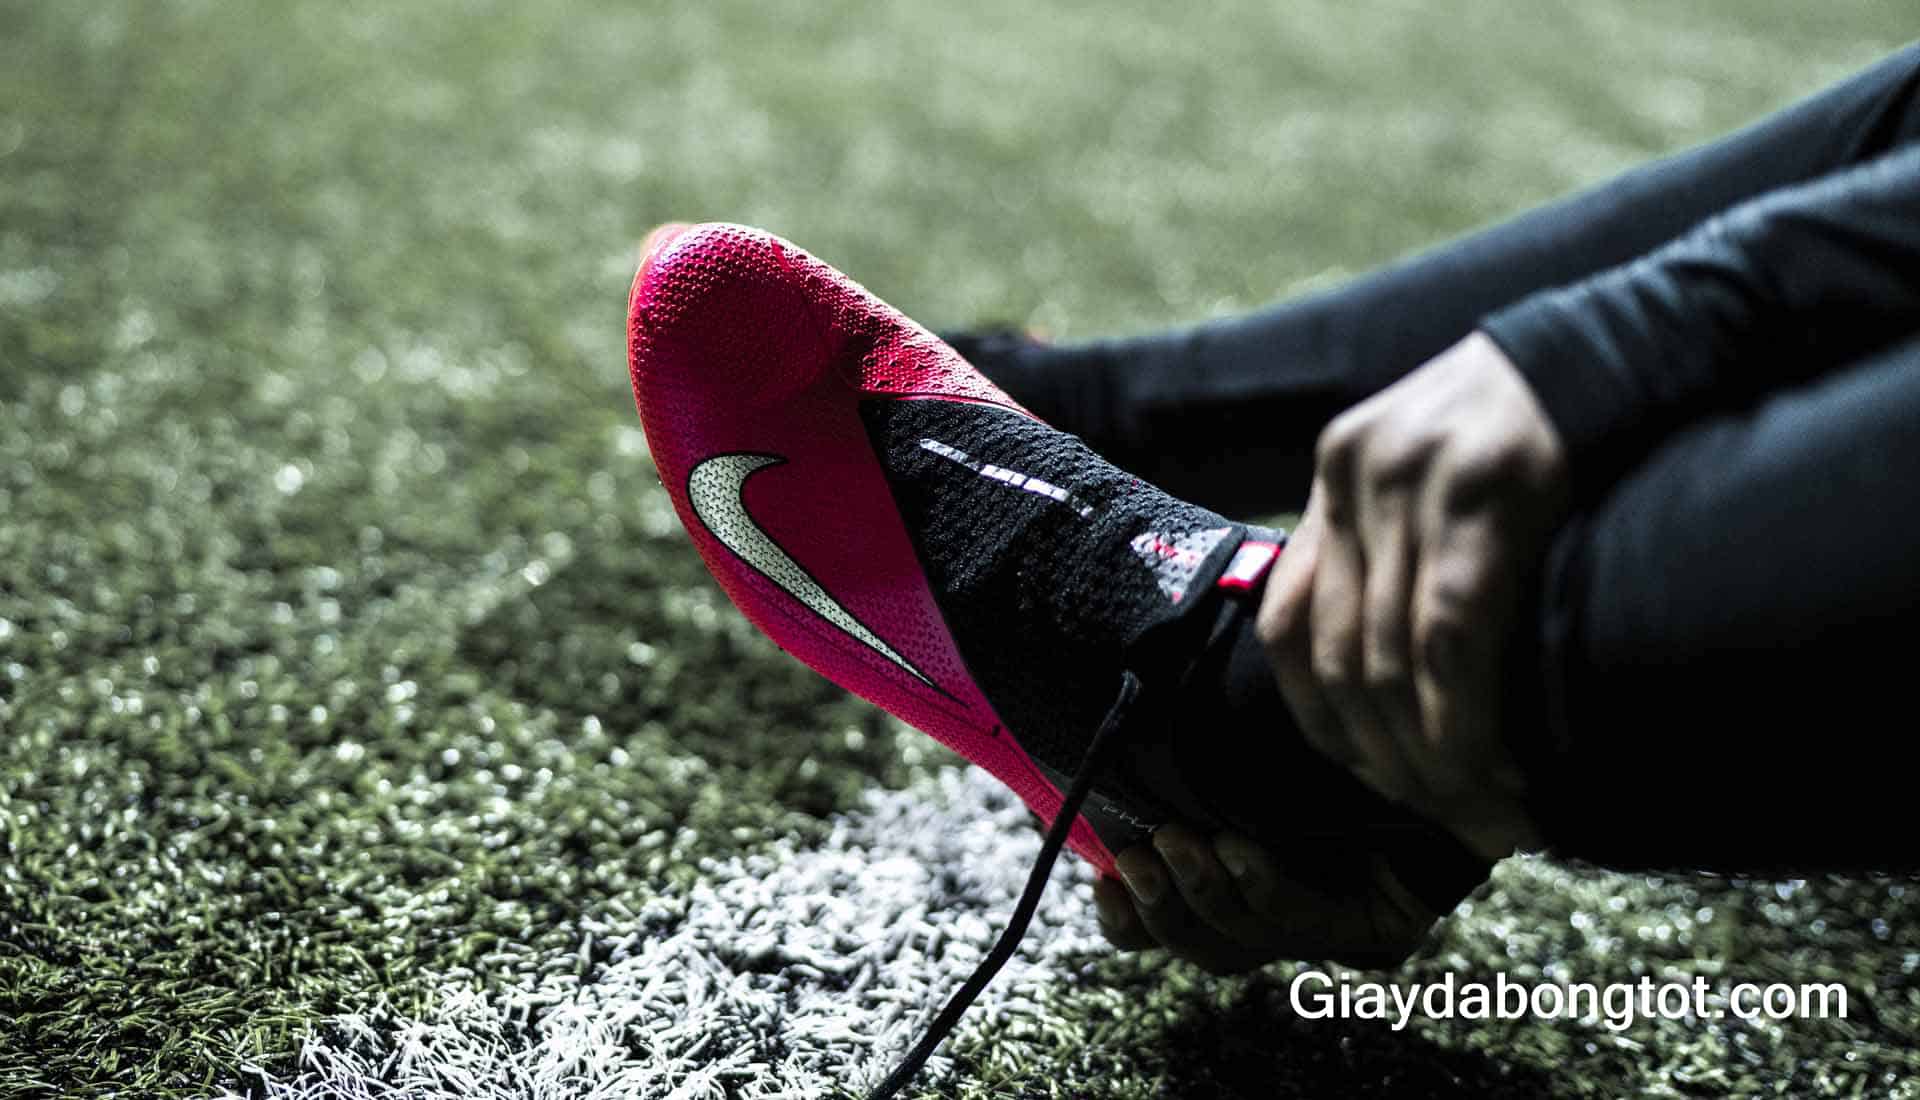 Giày đá bóng Nike Phantom VSN được định hướng là dòng giày kiểm soát bóng của Nike